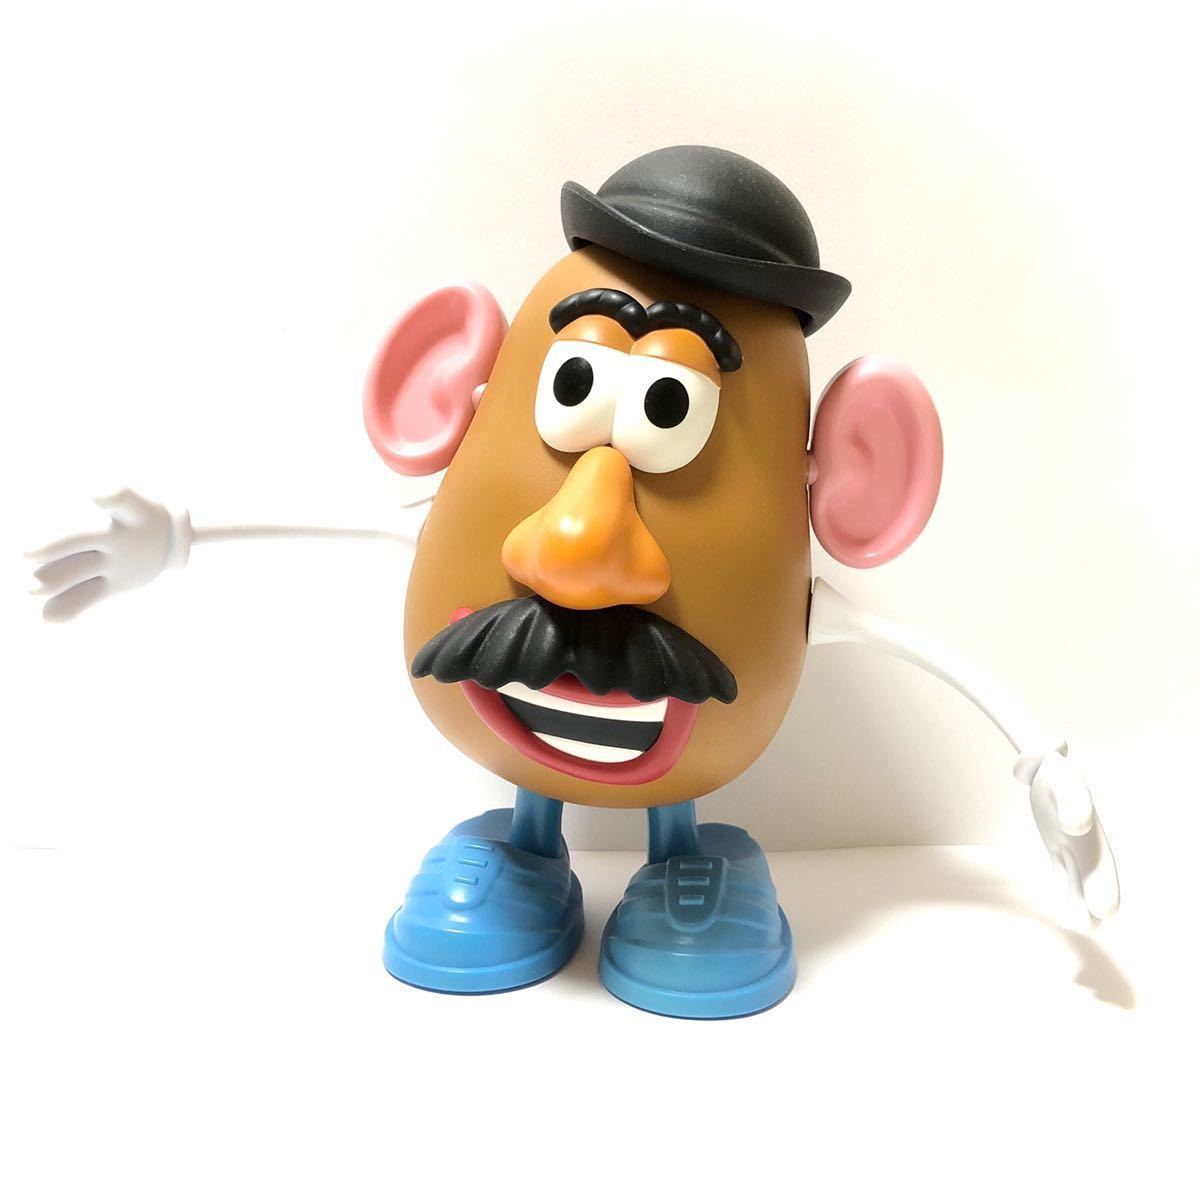 Paypayフリマ トイストーリー コレクション ミスターポテトヘッド 日本語版 Toy Story Collection Mr Potato Head トーキング フィギュア